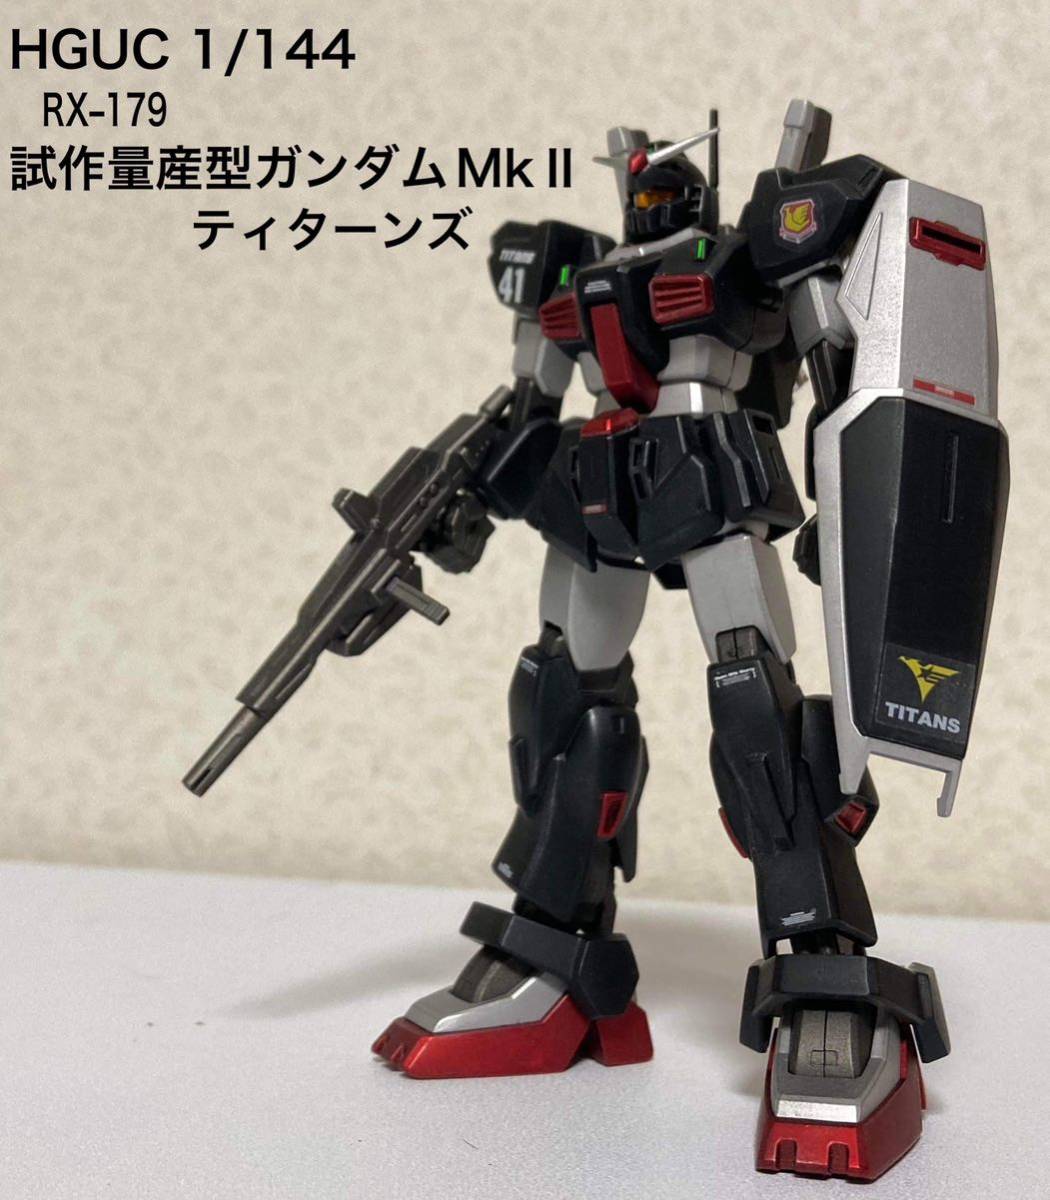 HGUC 1/144 RX-179 Prototipo Gundam MkⅡ producido en masa Producto terminado completamente pintado, personaje, Gundam, Producto terminado